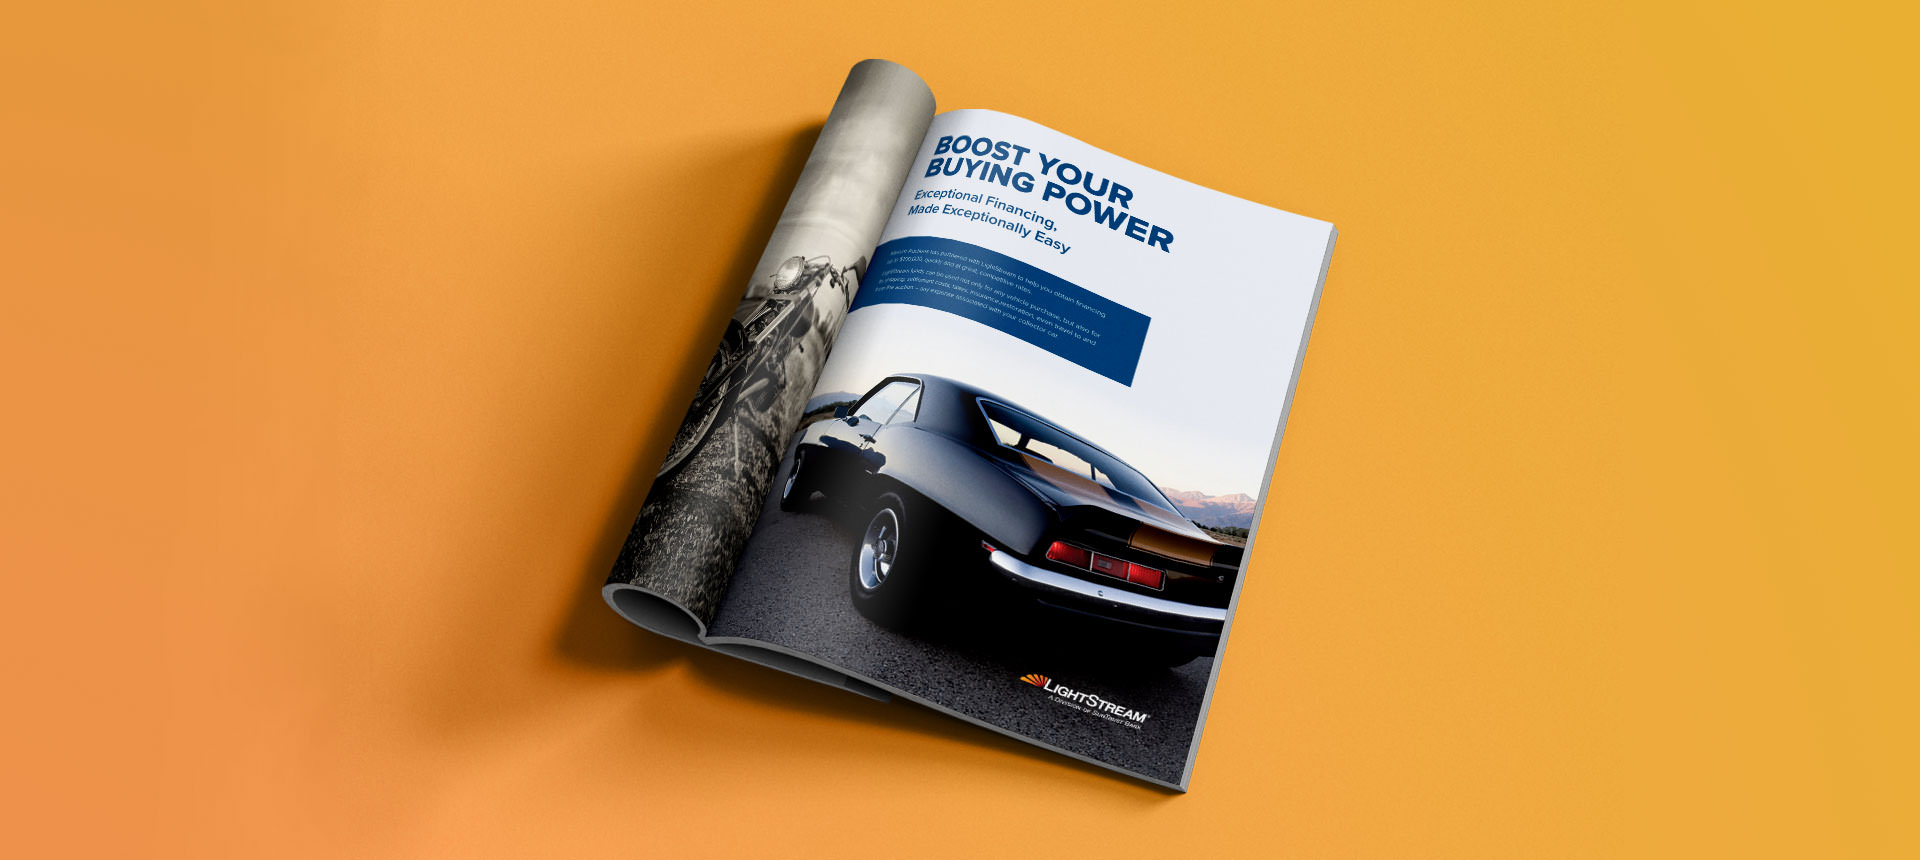 Auto loan ad design for a magazine